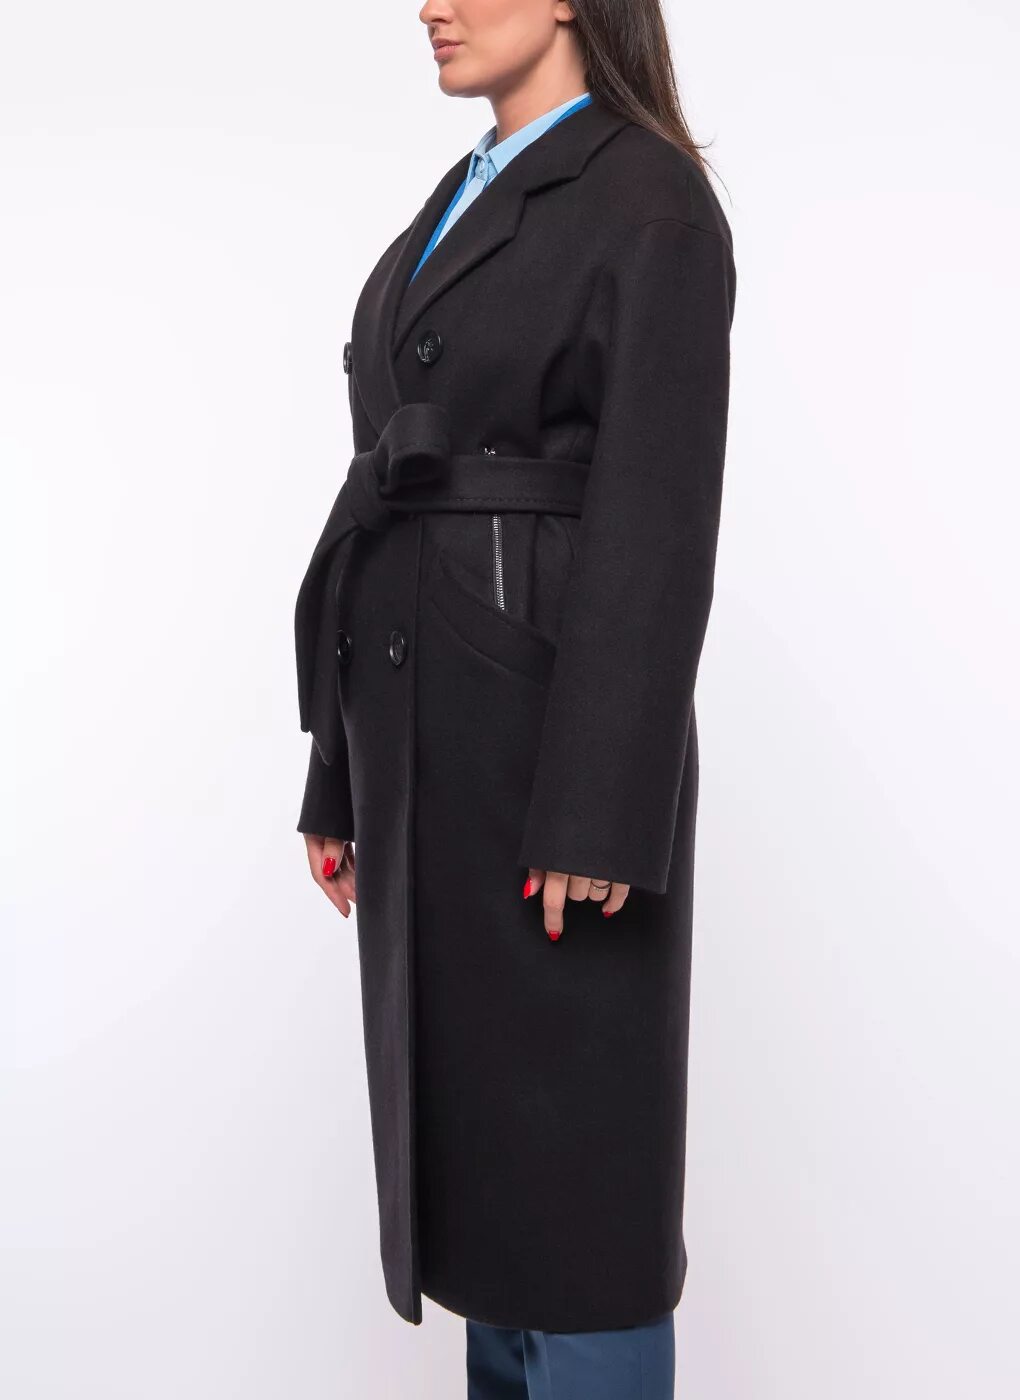 Пальто Zarya mody m 831k. Zarya Moda пальто 791. Черное пальто Заря мода.